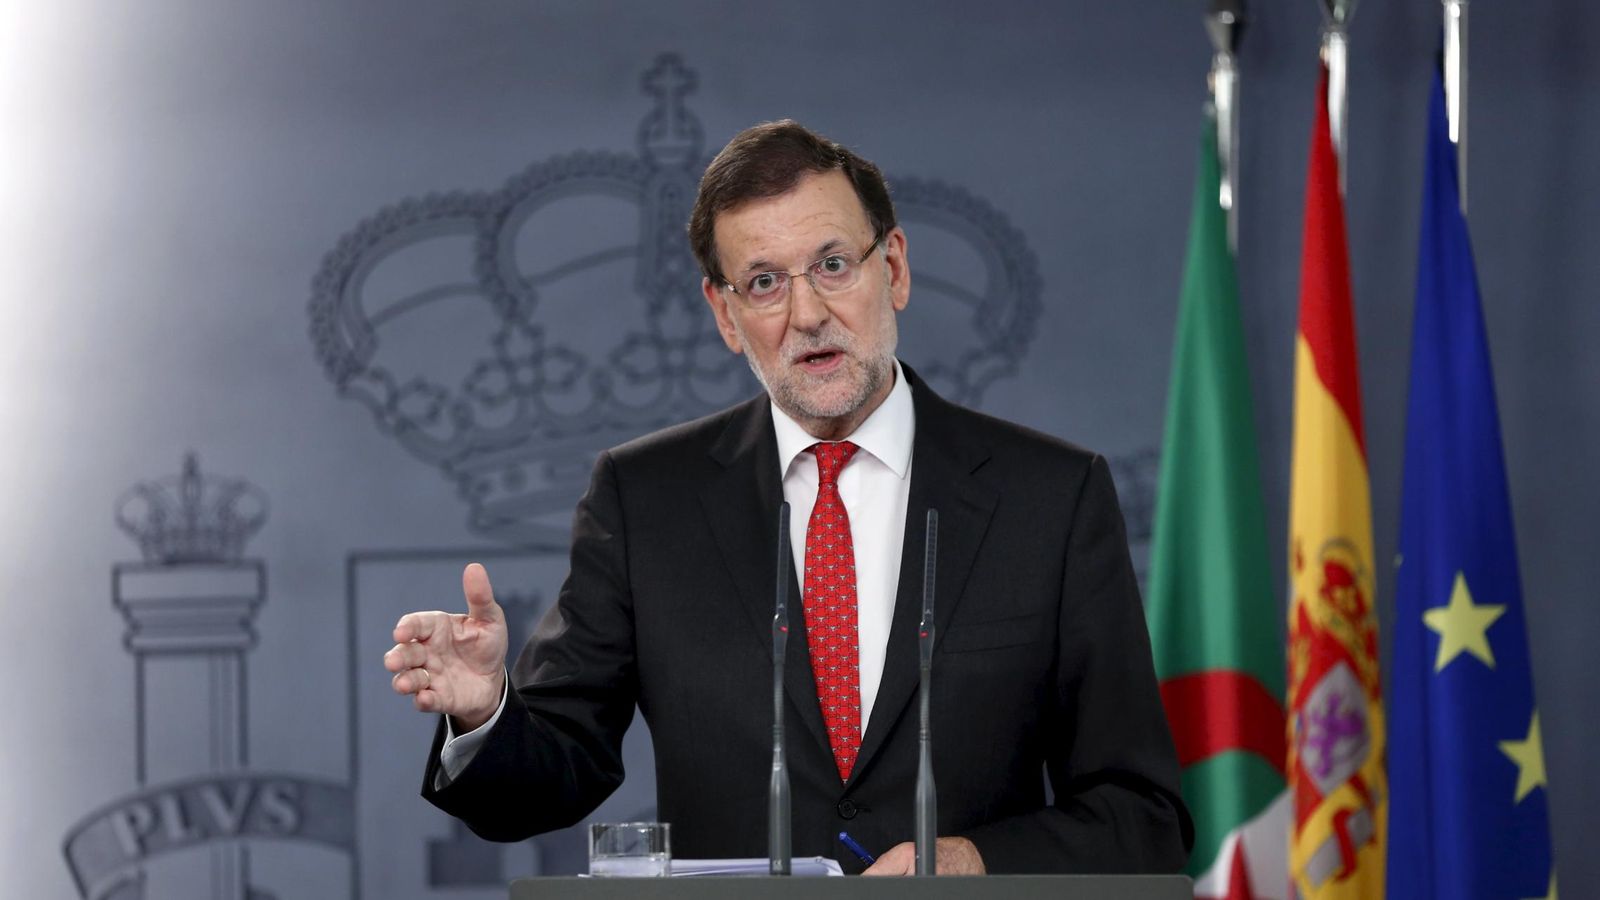 Foto: El presidente del Gobierno, Mariano Rajoy. (Reuters)